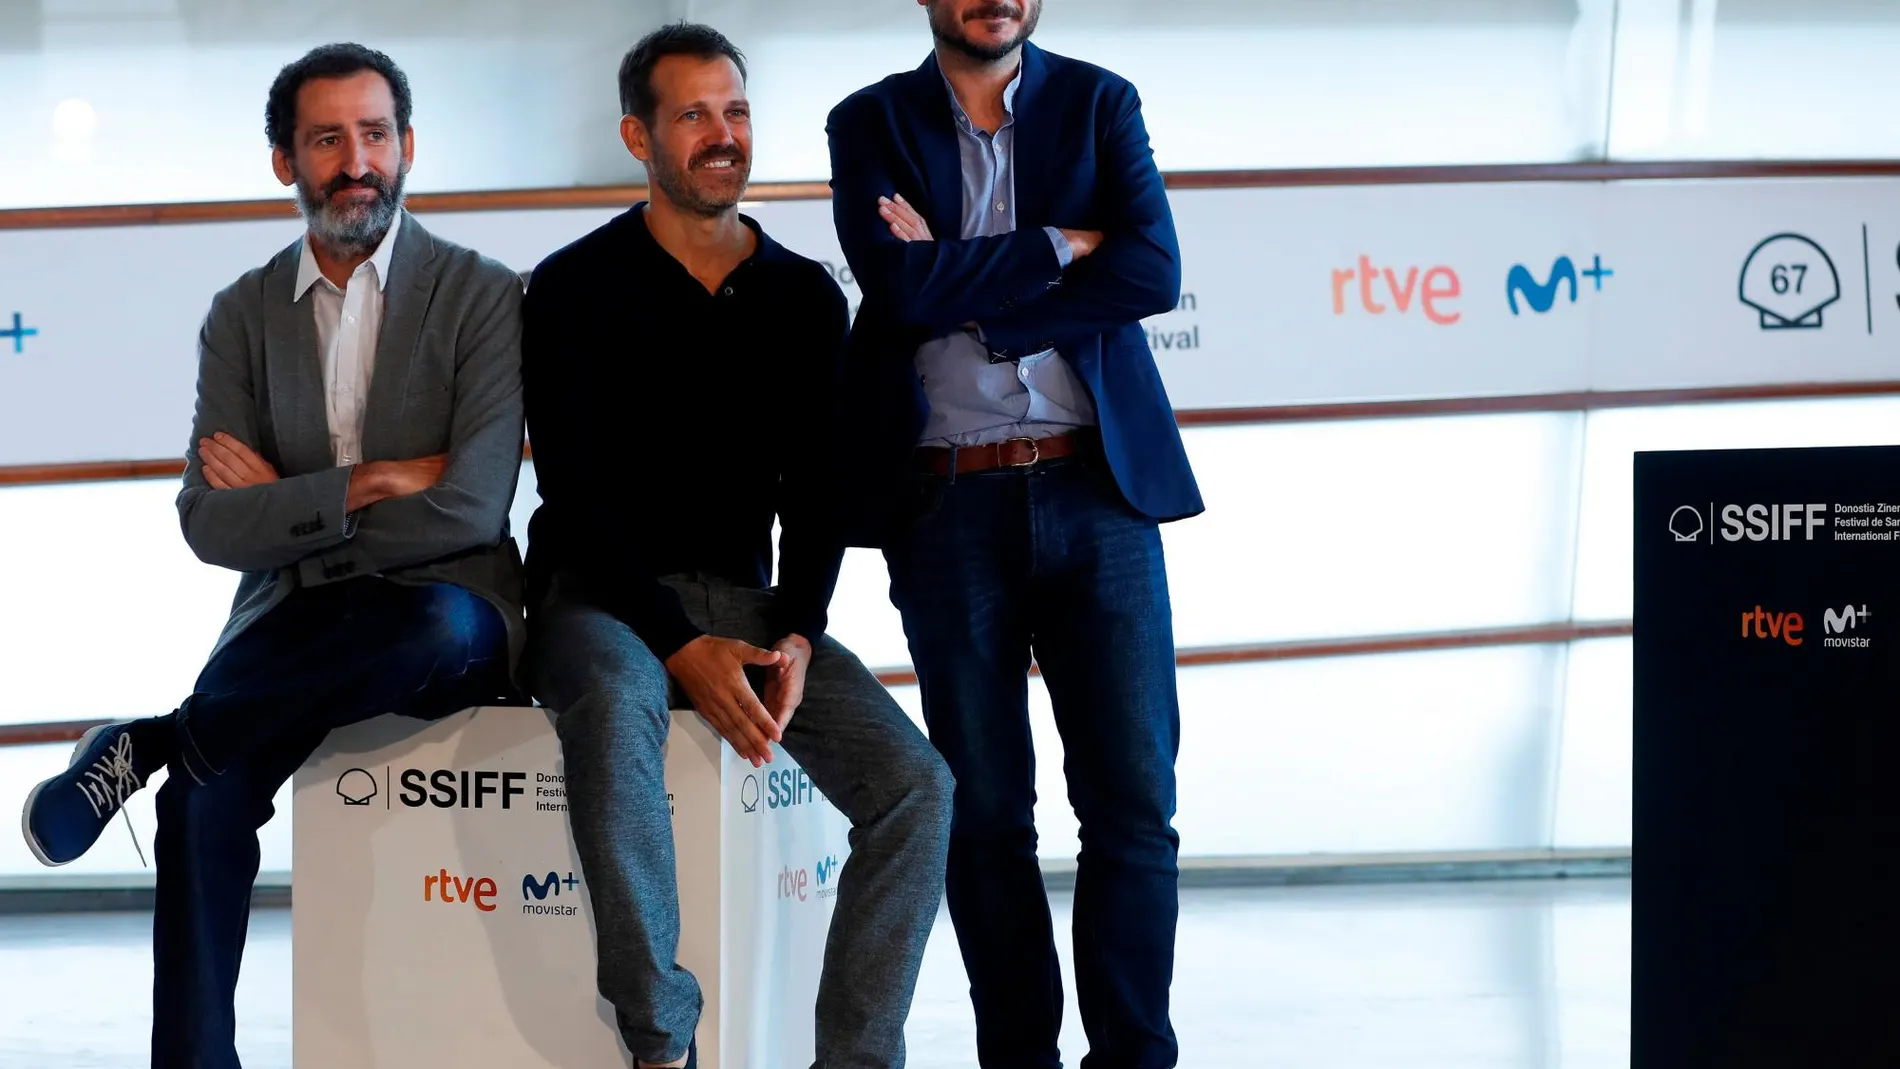 Los directores Aitor Arregi, Jon Garaño y José María Goenaga durante la presentación este domingo de su película “La trinchera infinita”, que compite en la sección oficial de la 67 edición del Festival de Cine de San Sebastián.